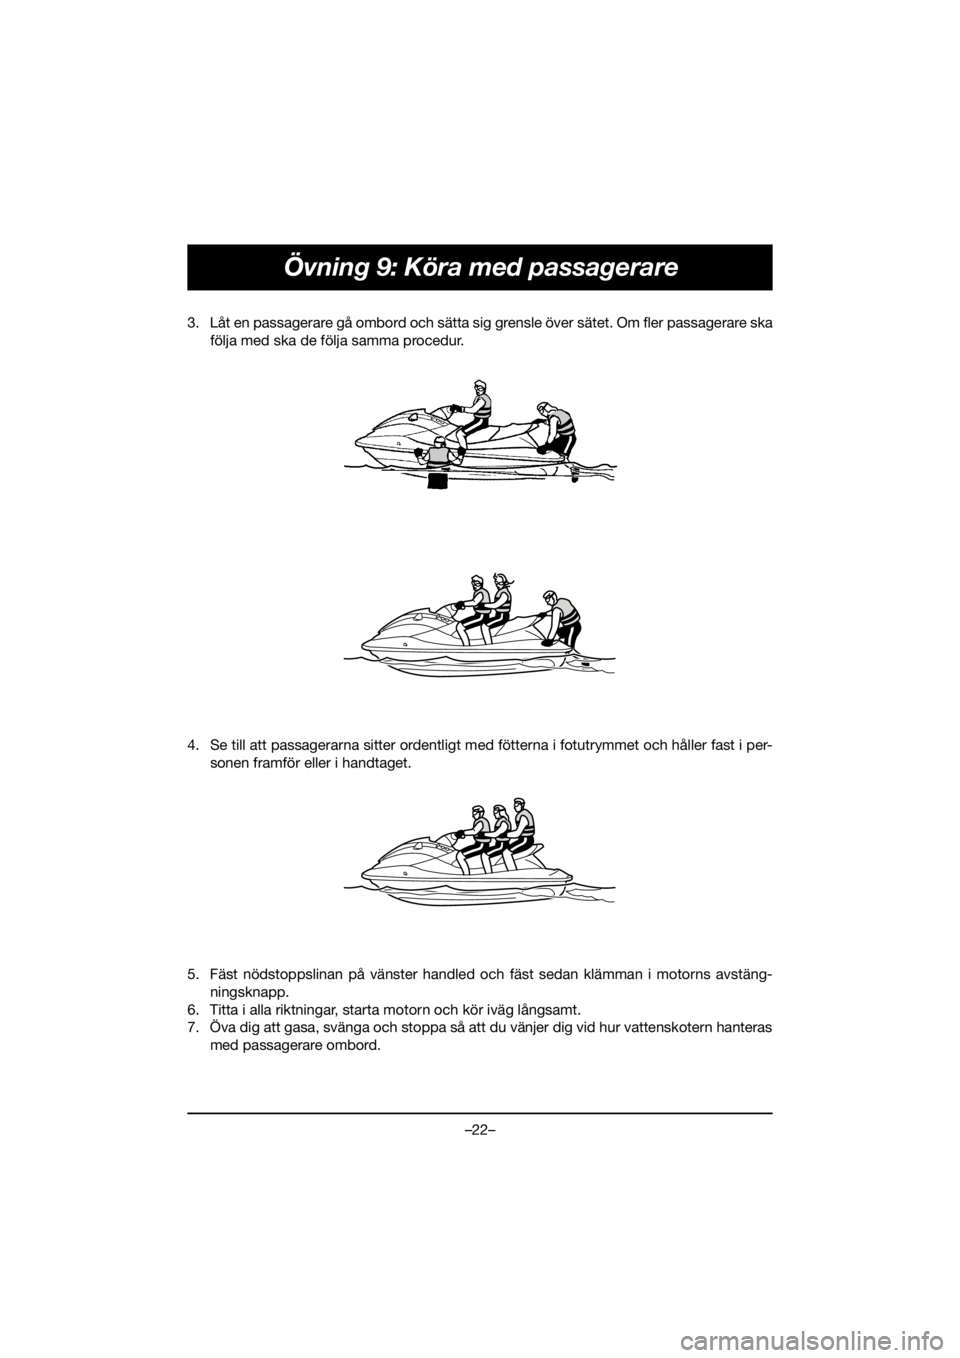 YAMAHA EX 2021  Manuale de Empleo (in Spanish) –22–
Övning 9: Köra med passagerare
3. Låt en passagerare gå ombord och sätta sig grensle över sätet. Om fler passagerare ska
följa med ska de följa samma procedur. 
4. Se till att passag